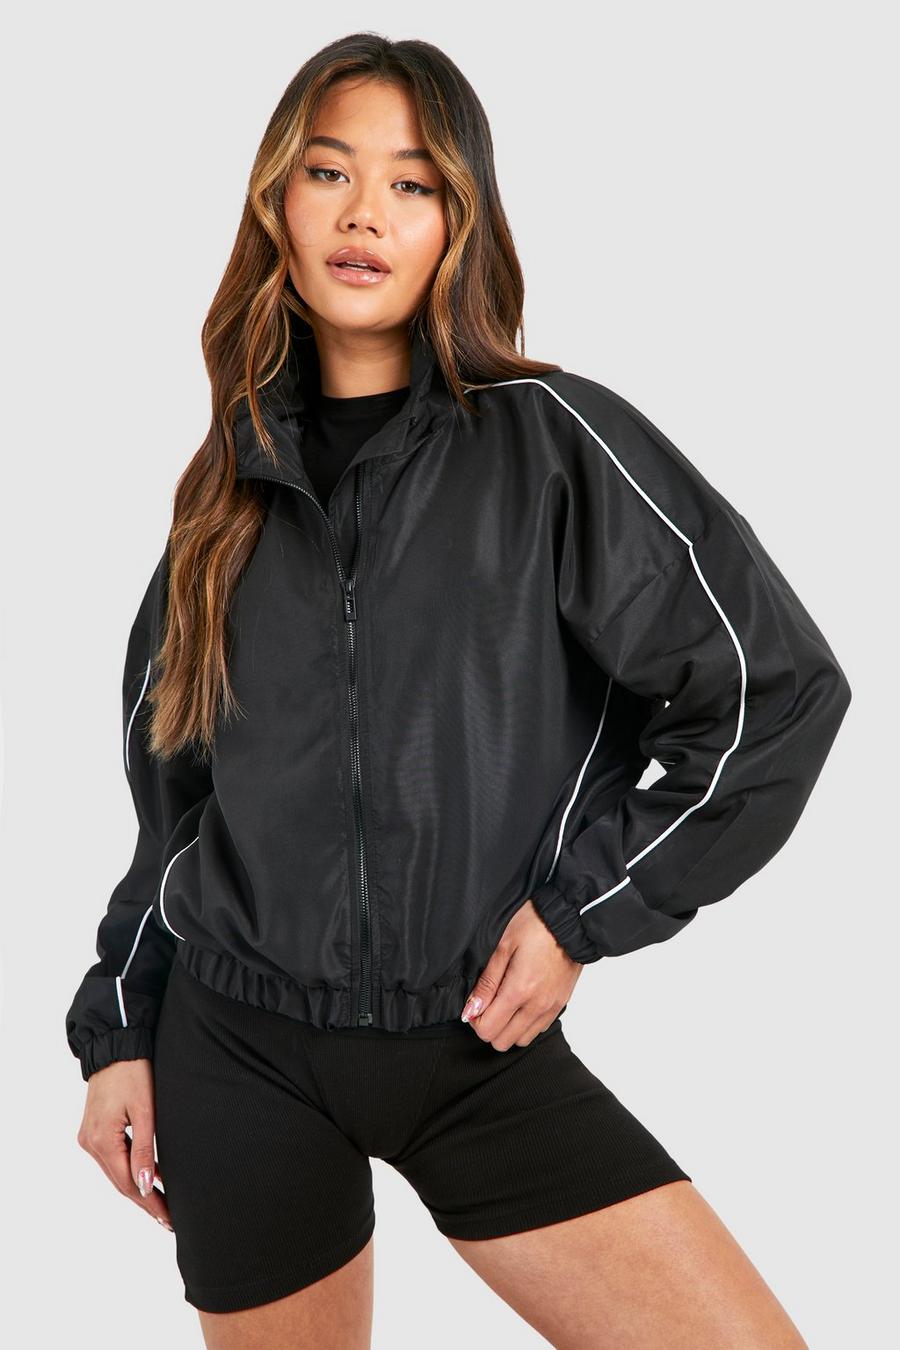 Black category jackets use run 